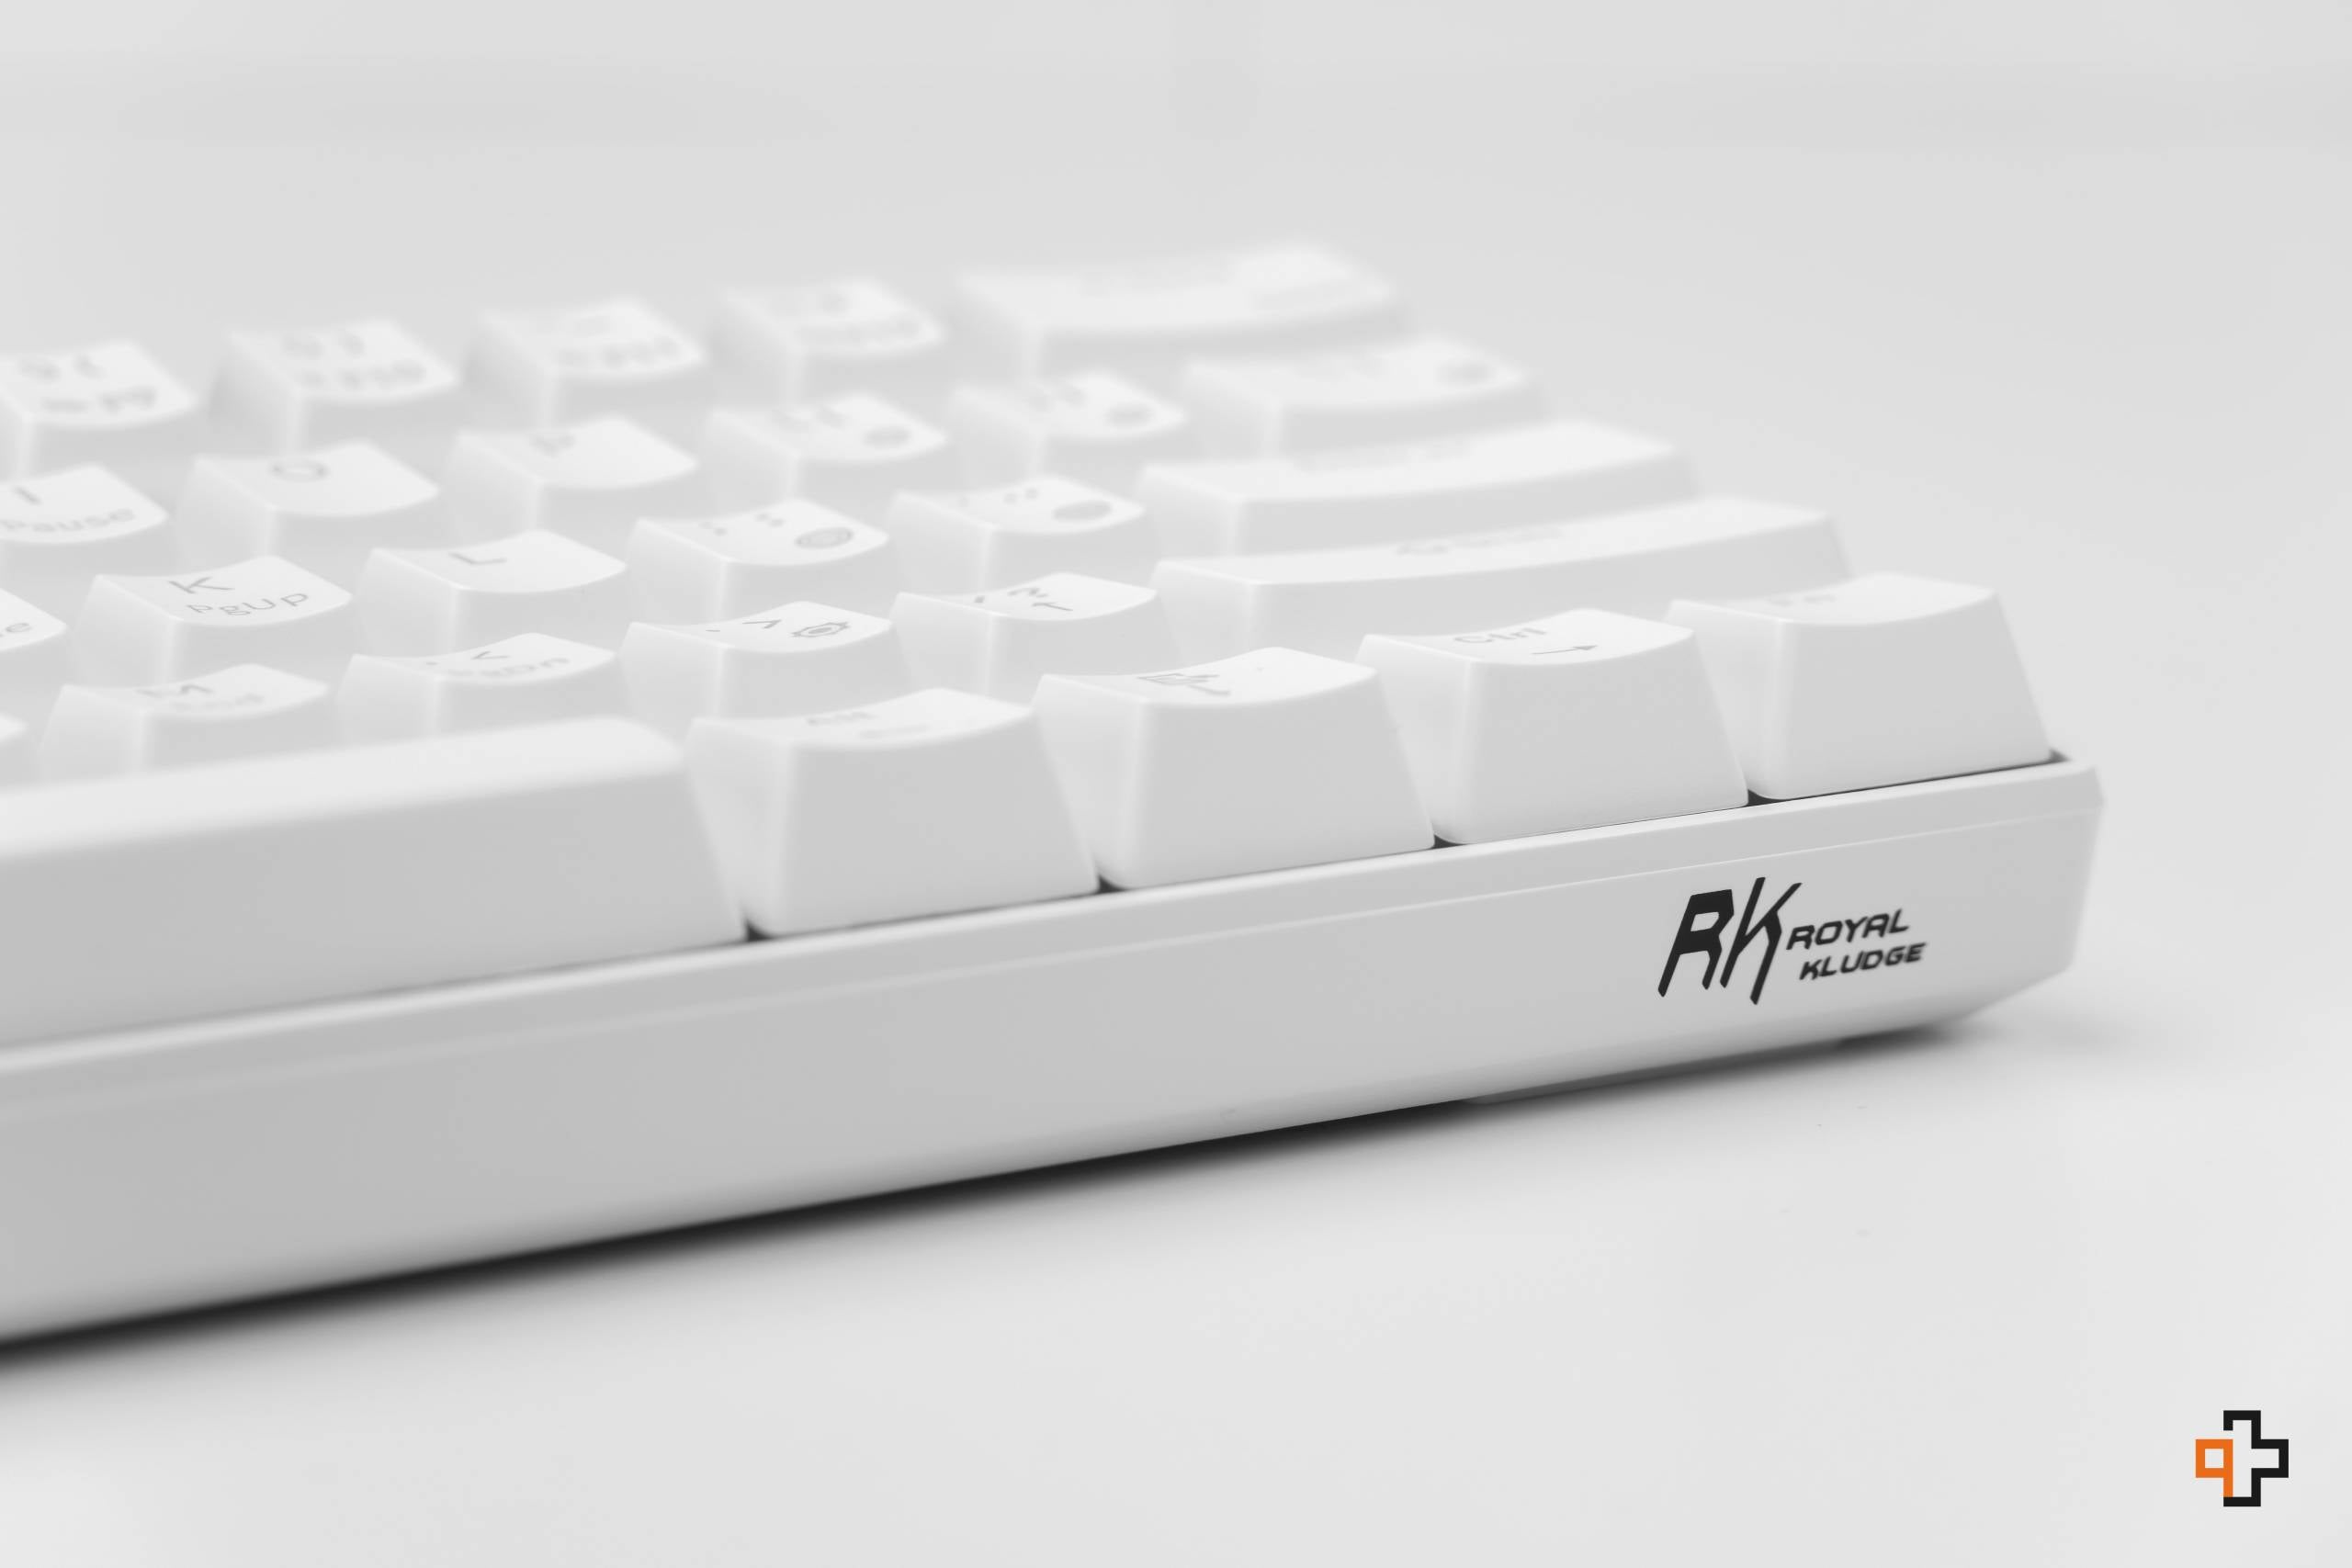 royal kludge rk61 teclado clavier para